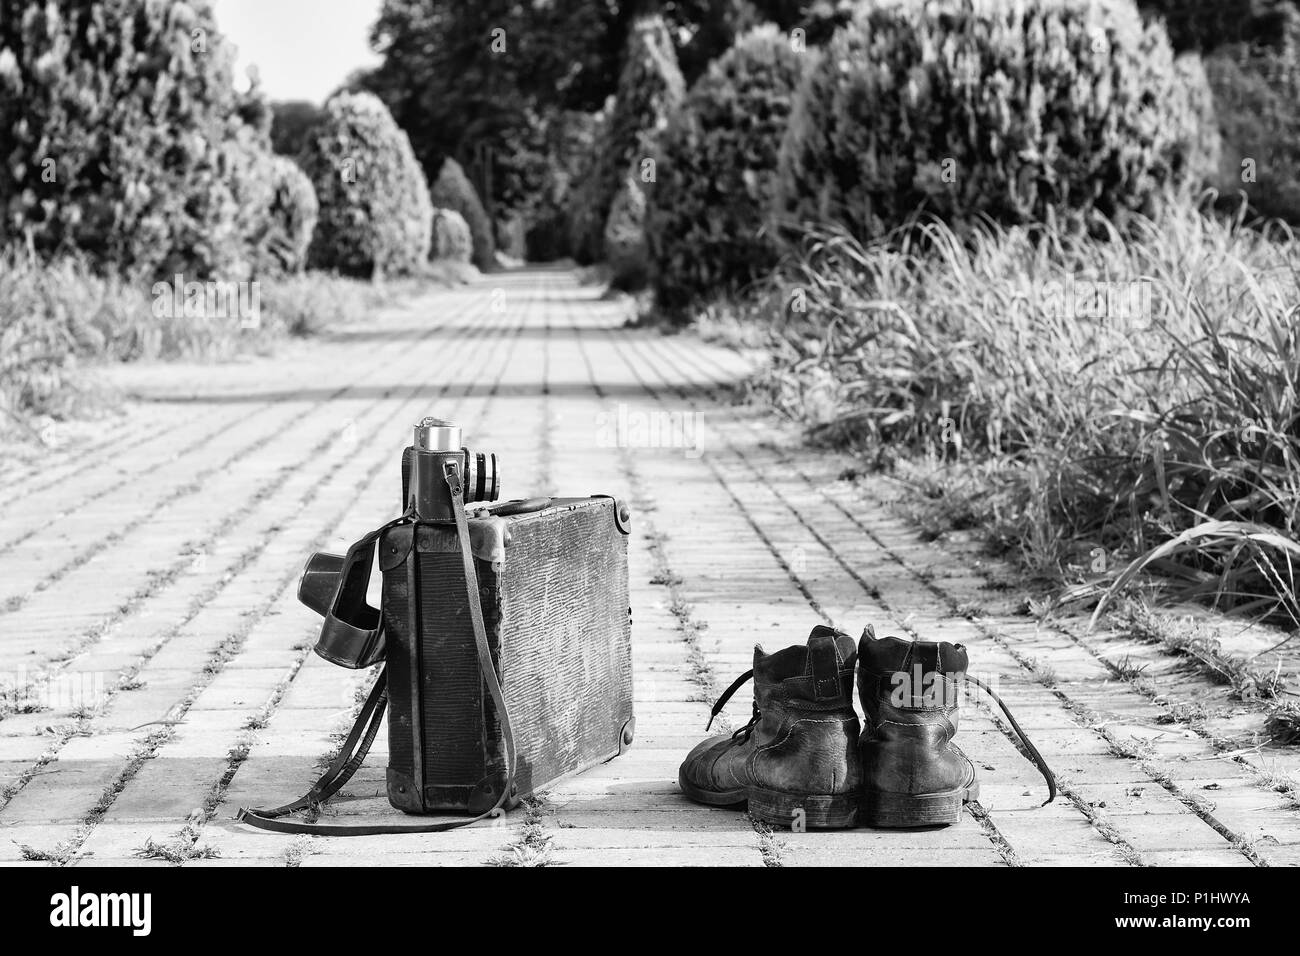 Viajar ligero! Botines desgastados vintage junto a una maleta de cartón, una cámara de cine en su funda de cuero, y un camino de ladrillos. Una fotografía en B/N efecto. Foto de stock